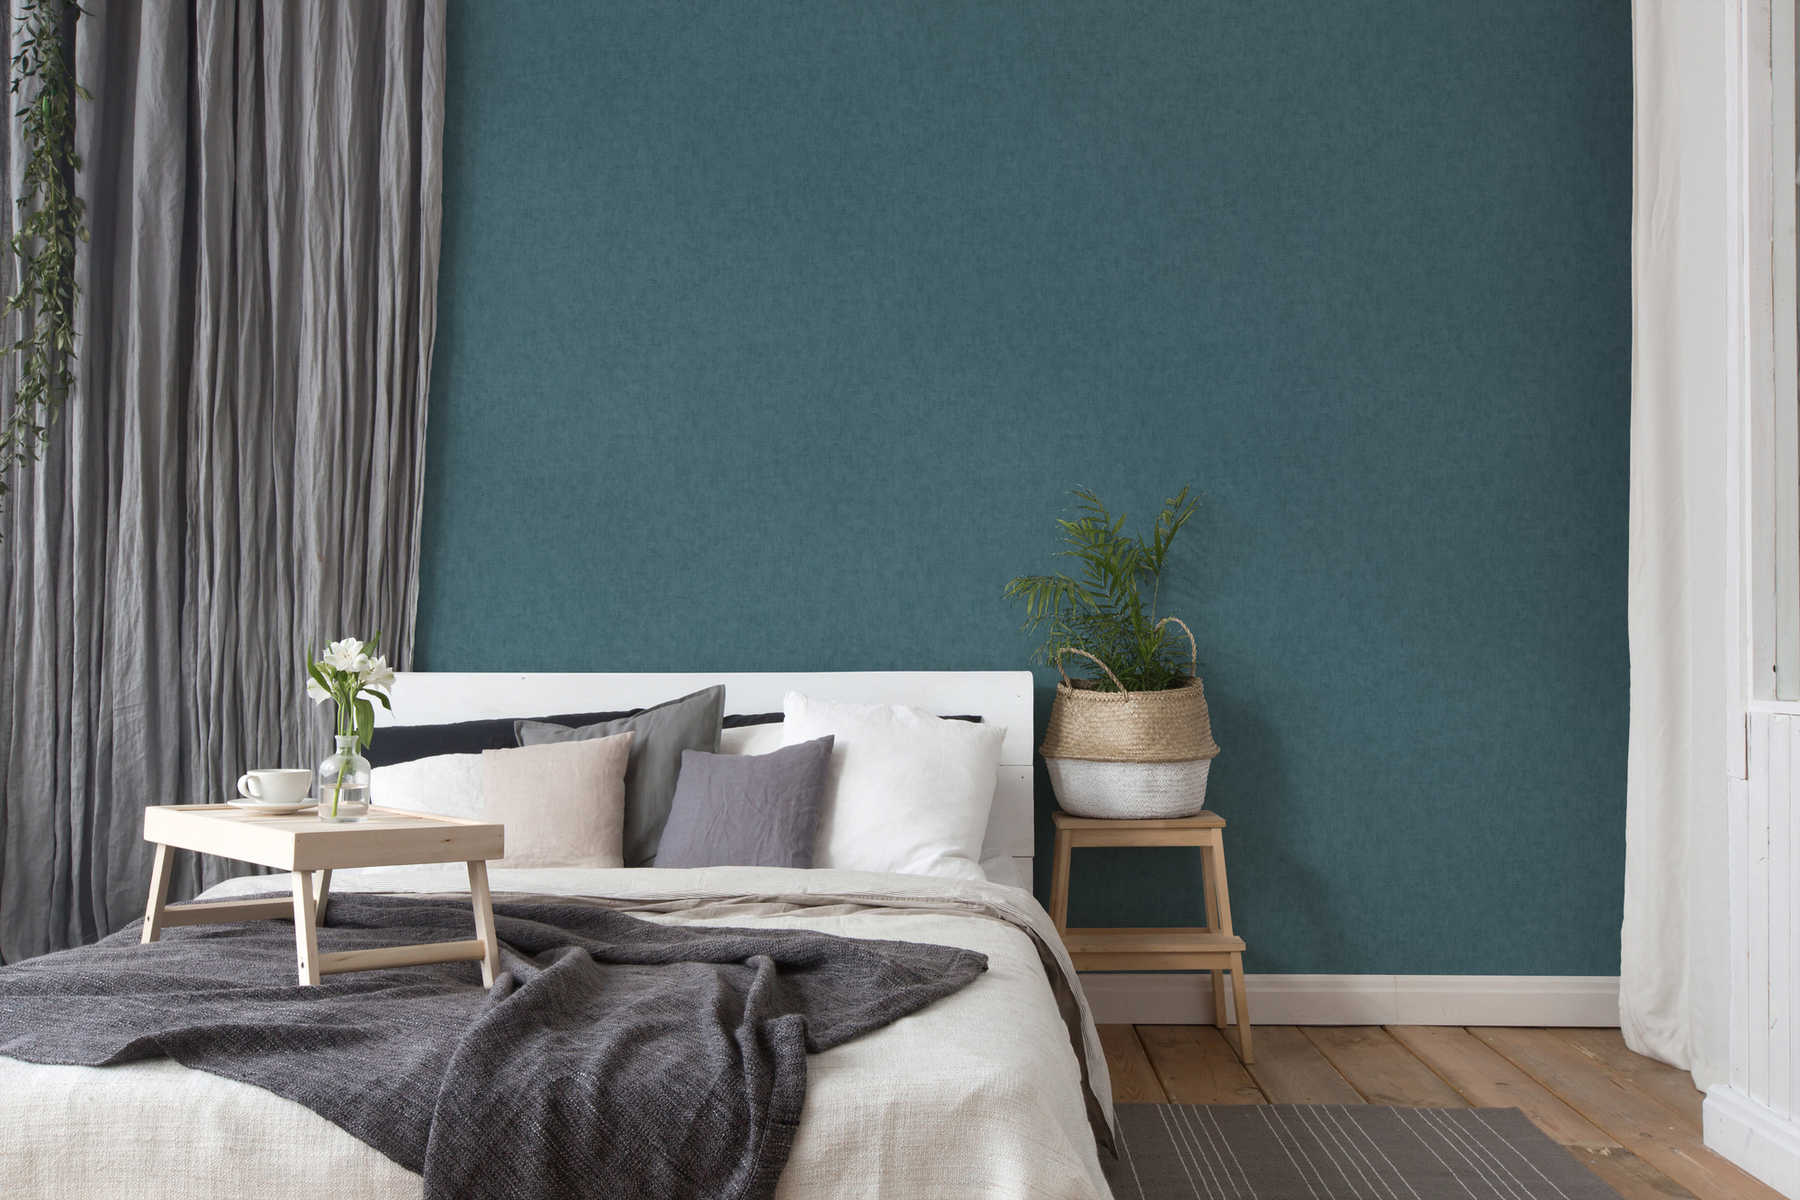             Non-woven wallpaper textile look Scandinavian style - blue, grey
        